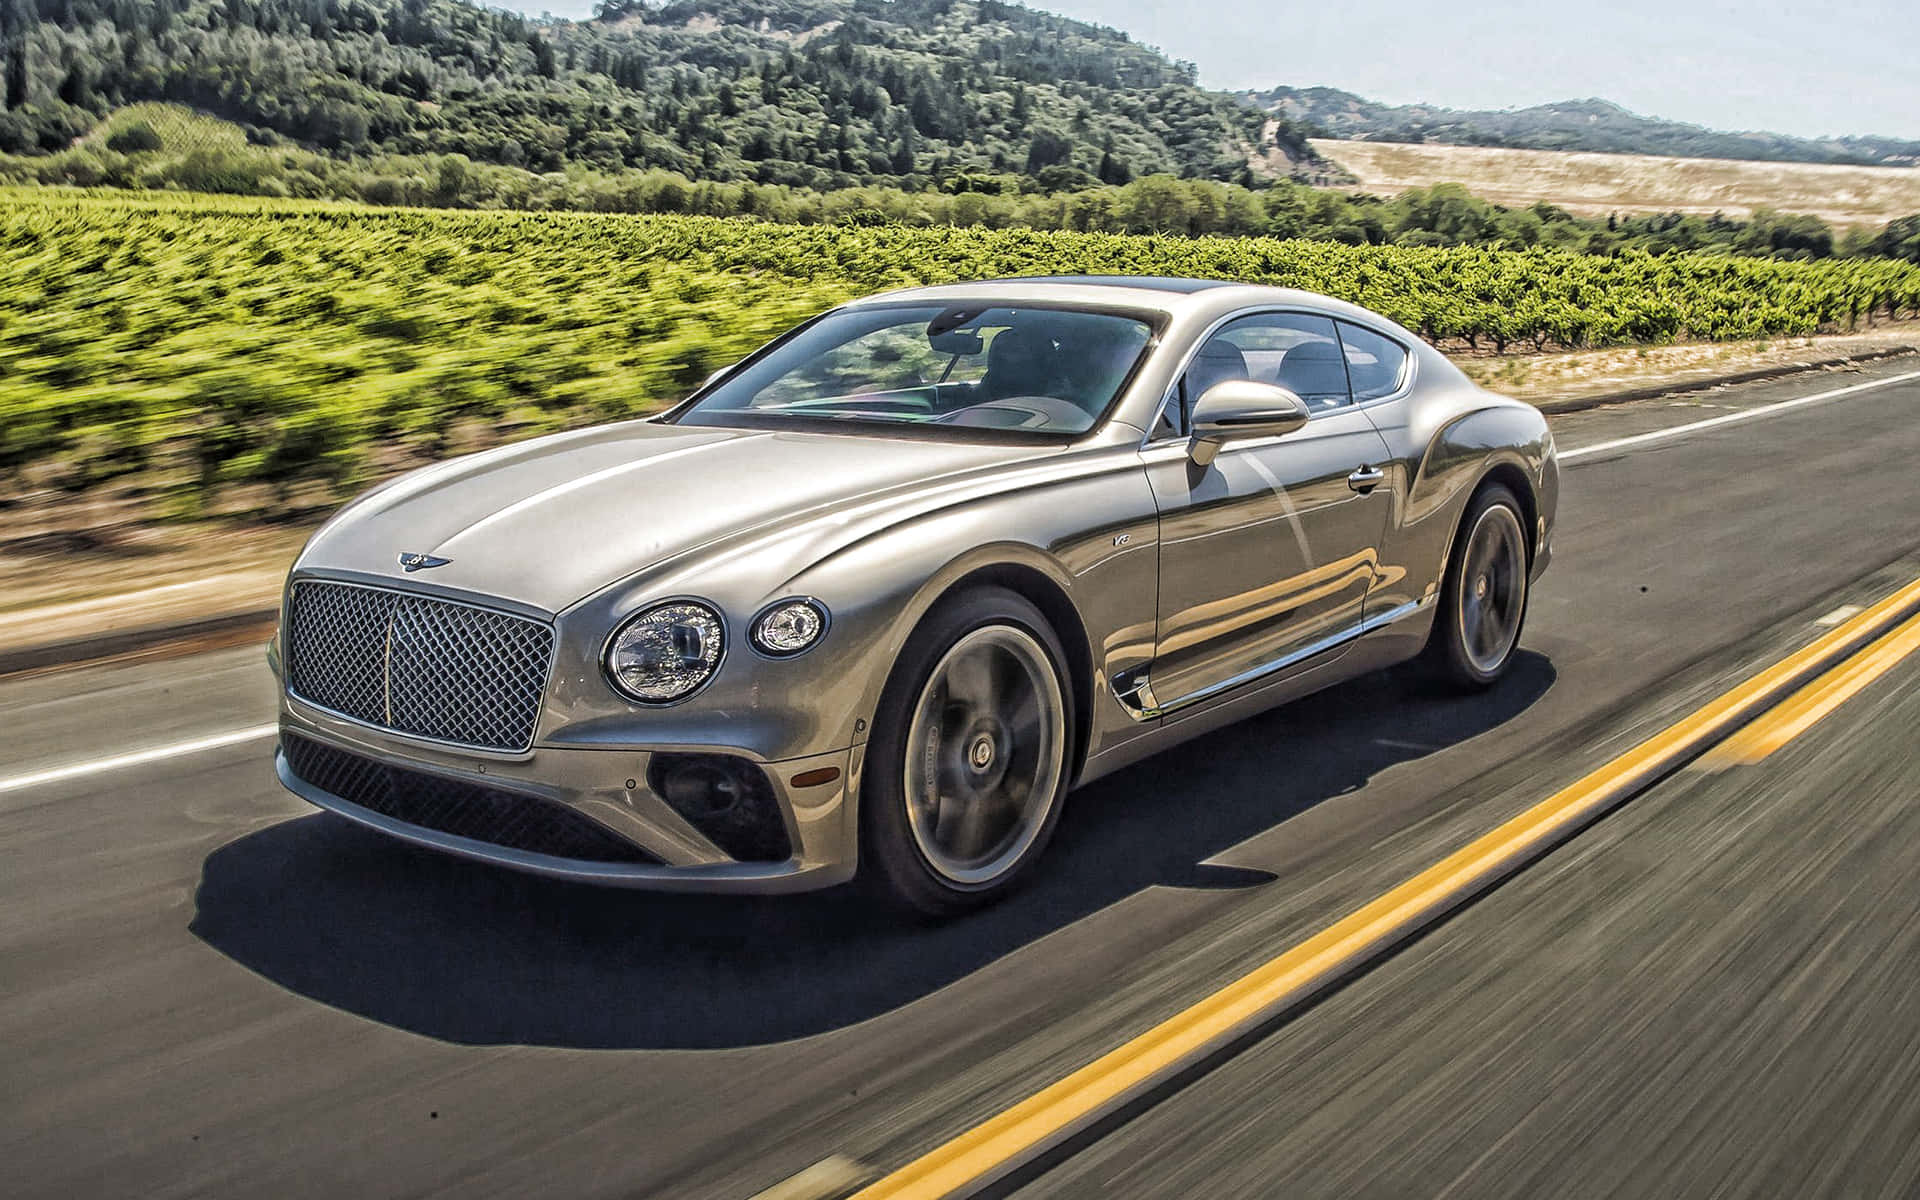 Look Good, Go Fast - The Bentley Sport Wallpaper